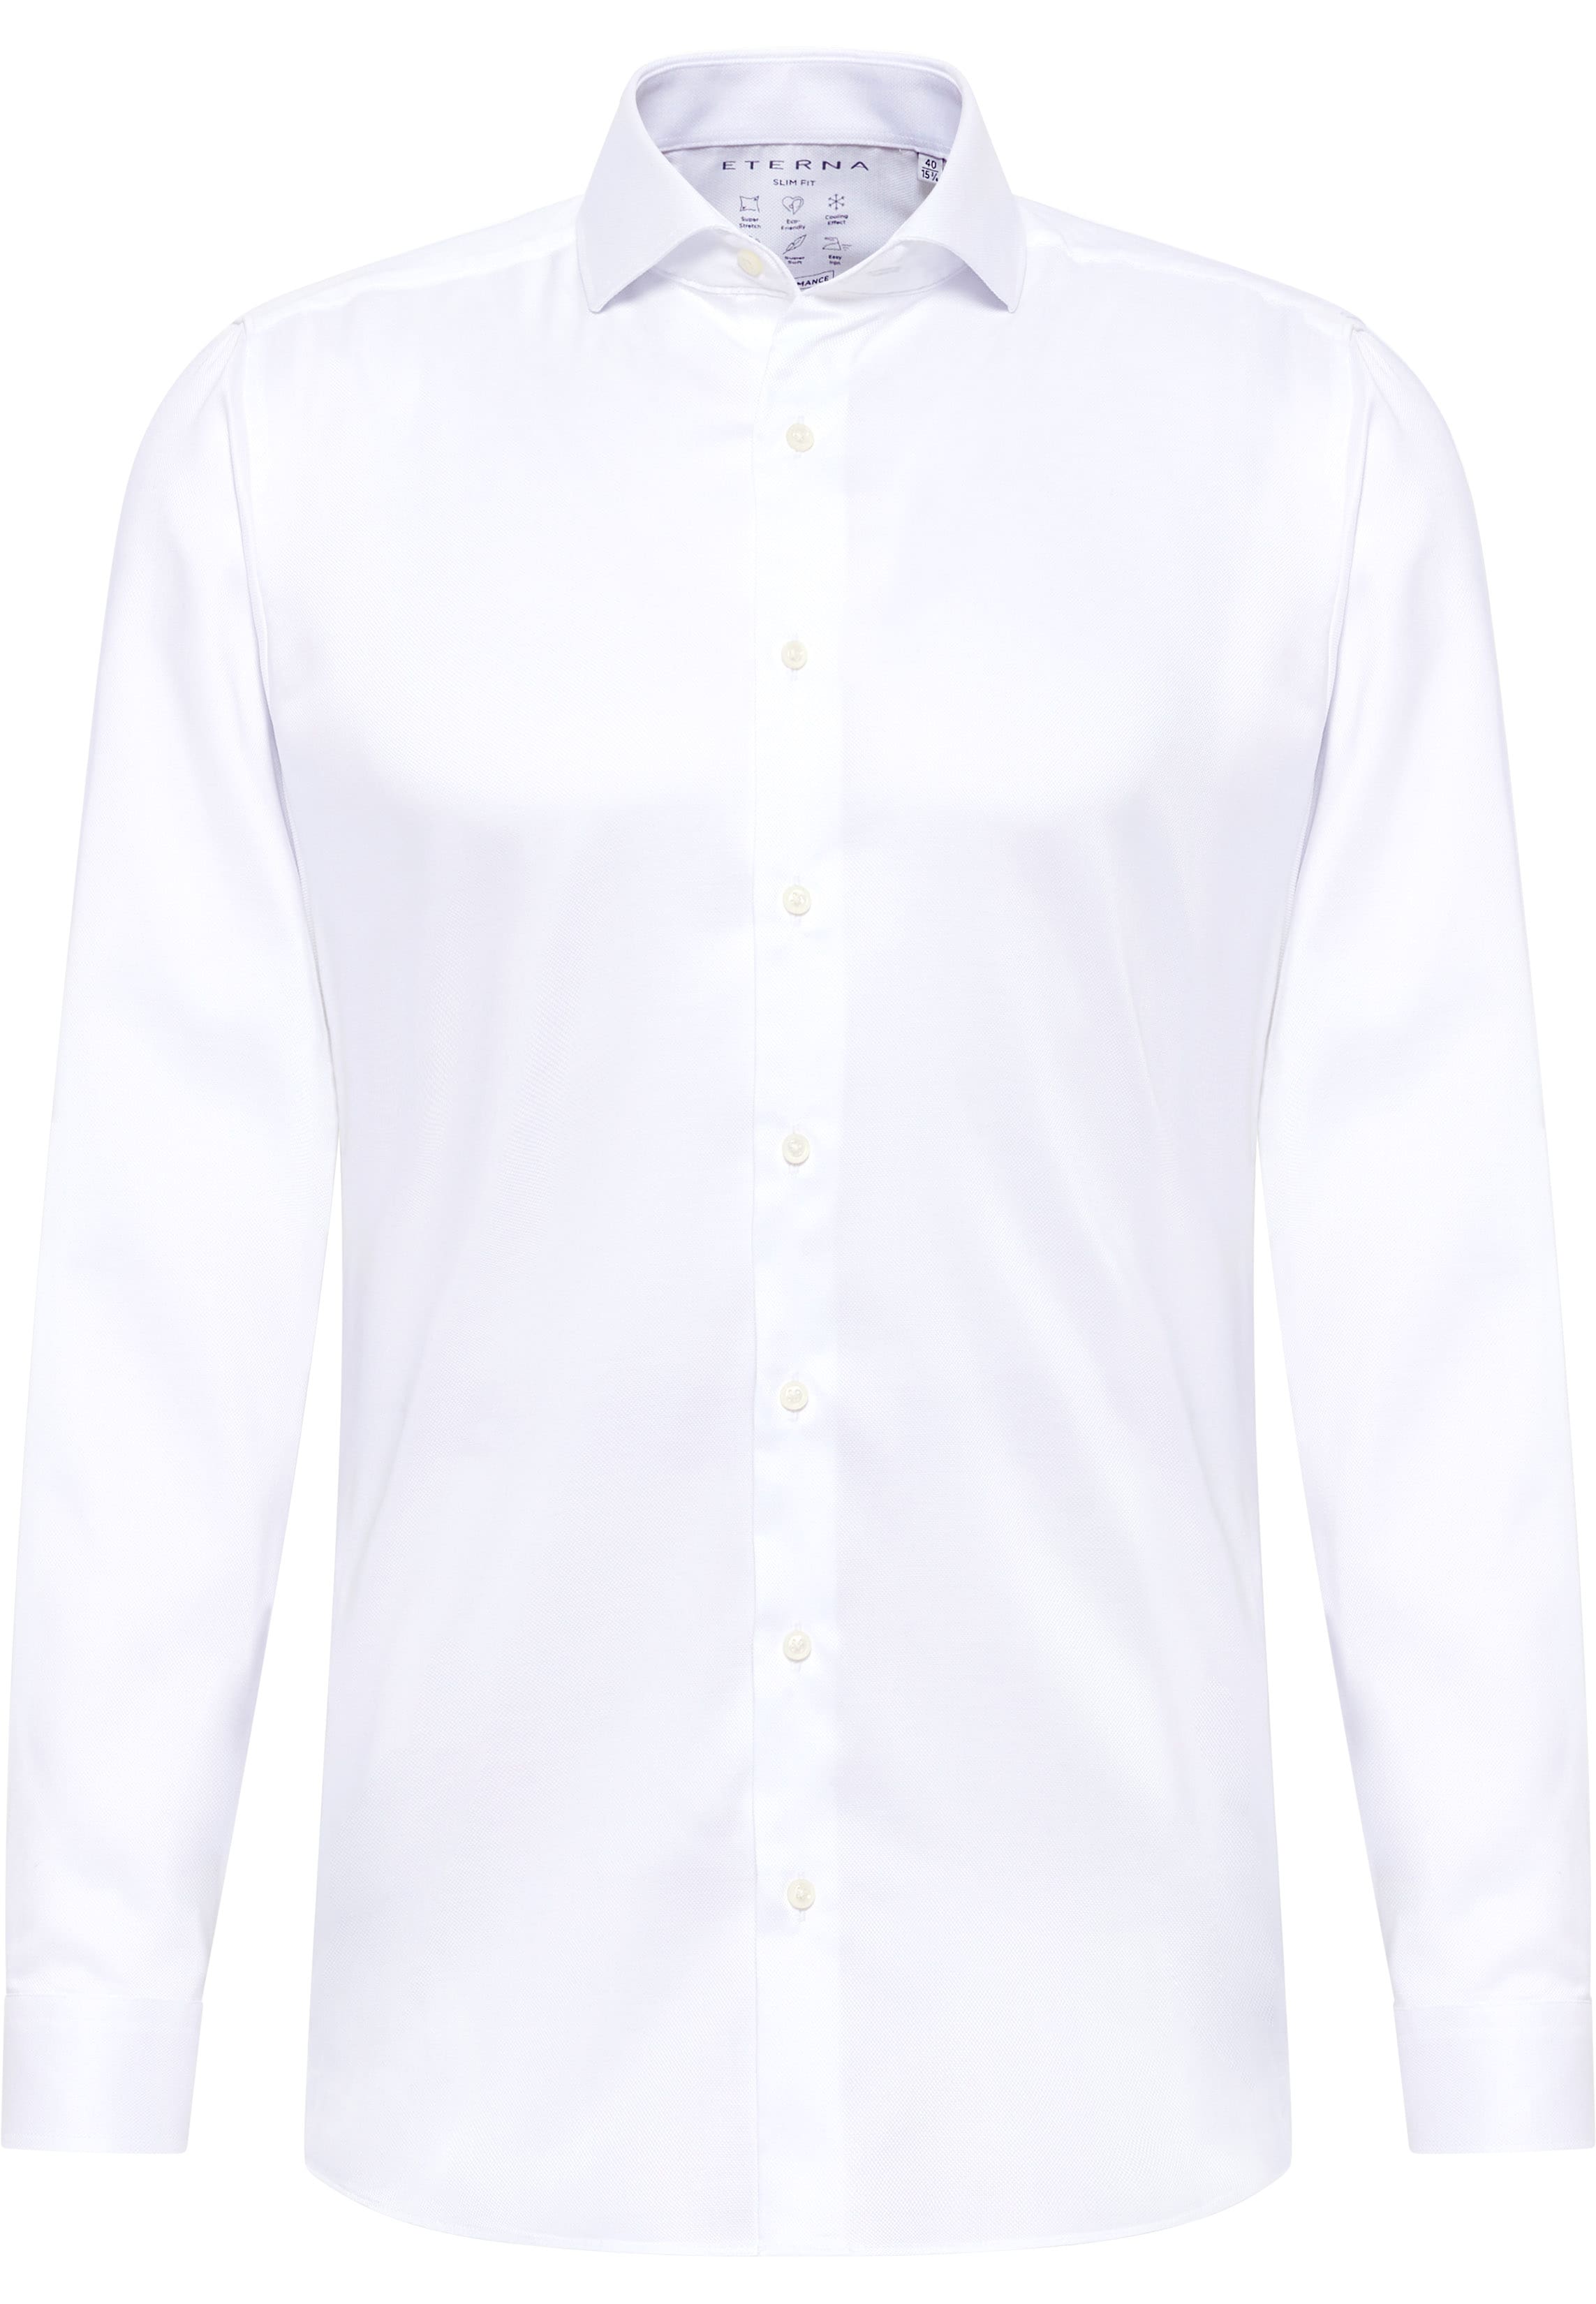 SLIM FIT Performance Shirt blanc structuré